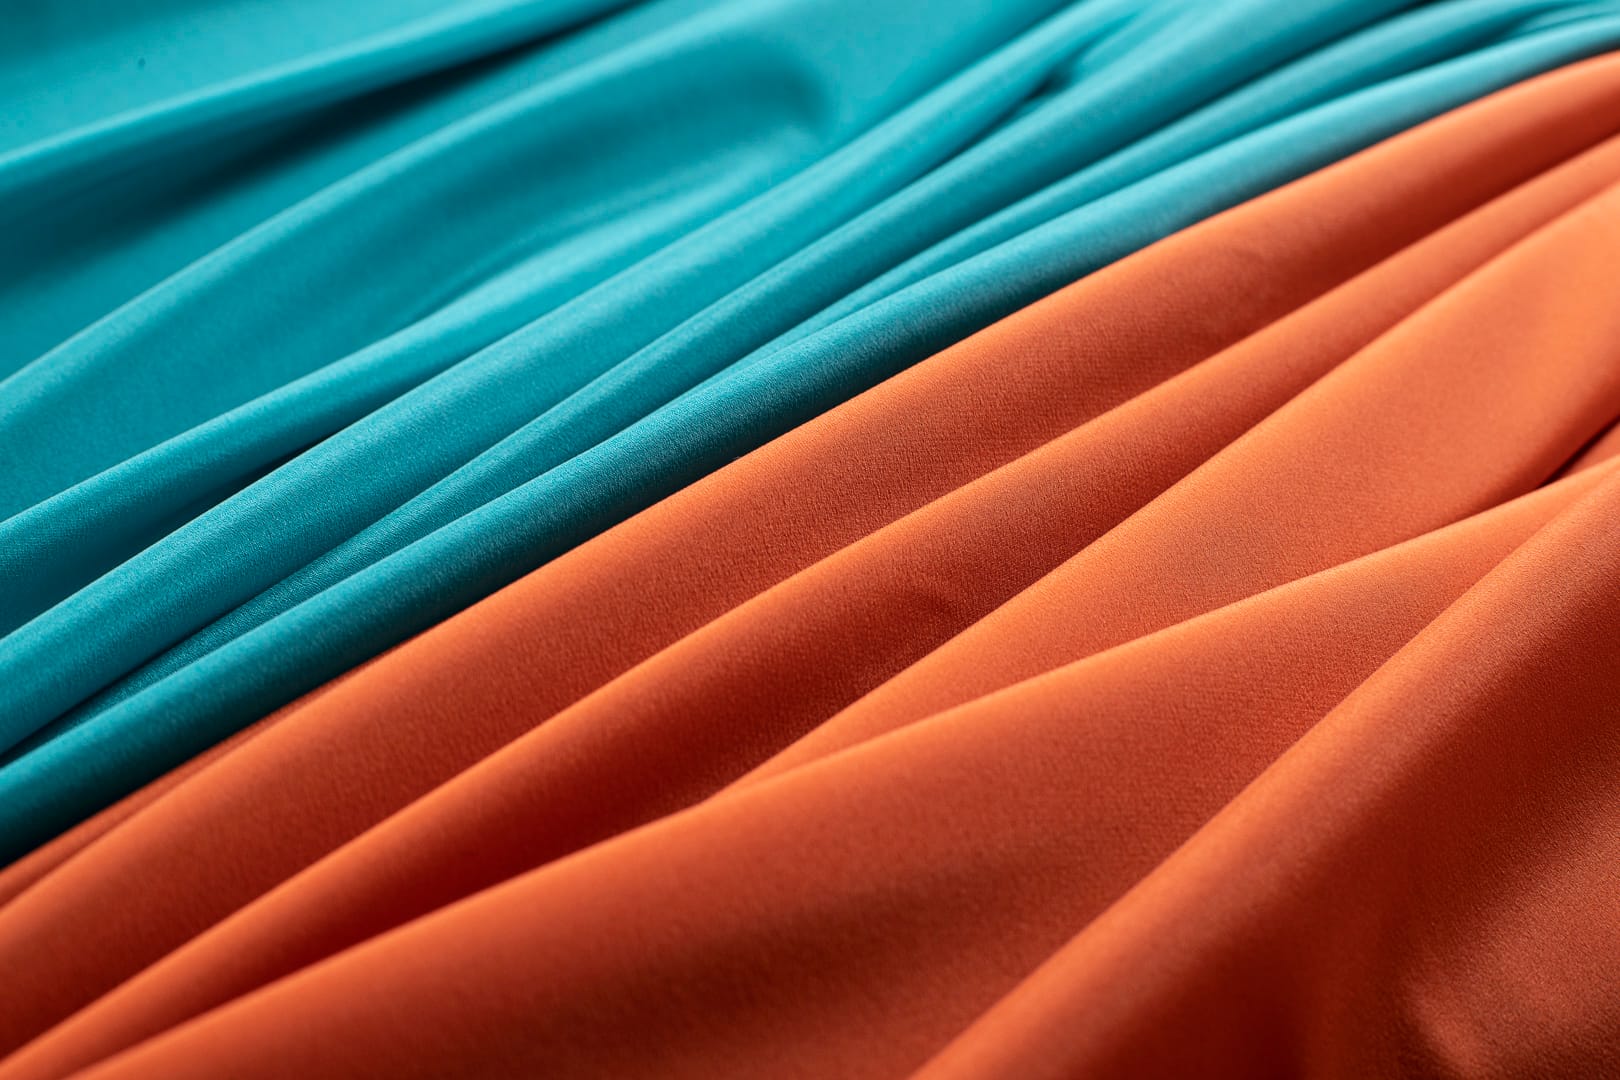 Tessuto crepe de chine stretch di seta per abbigliamento | new tess